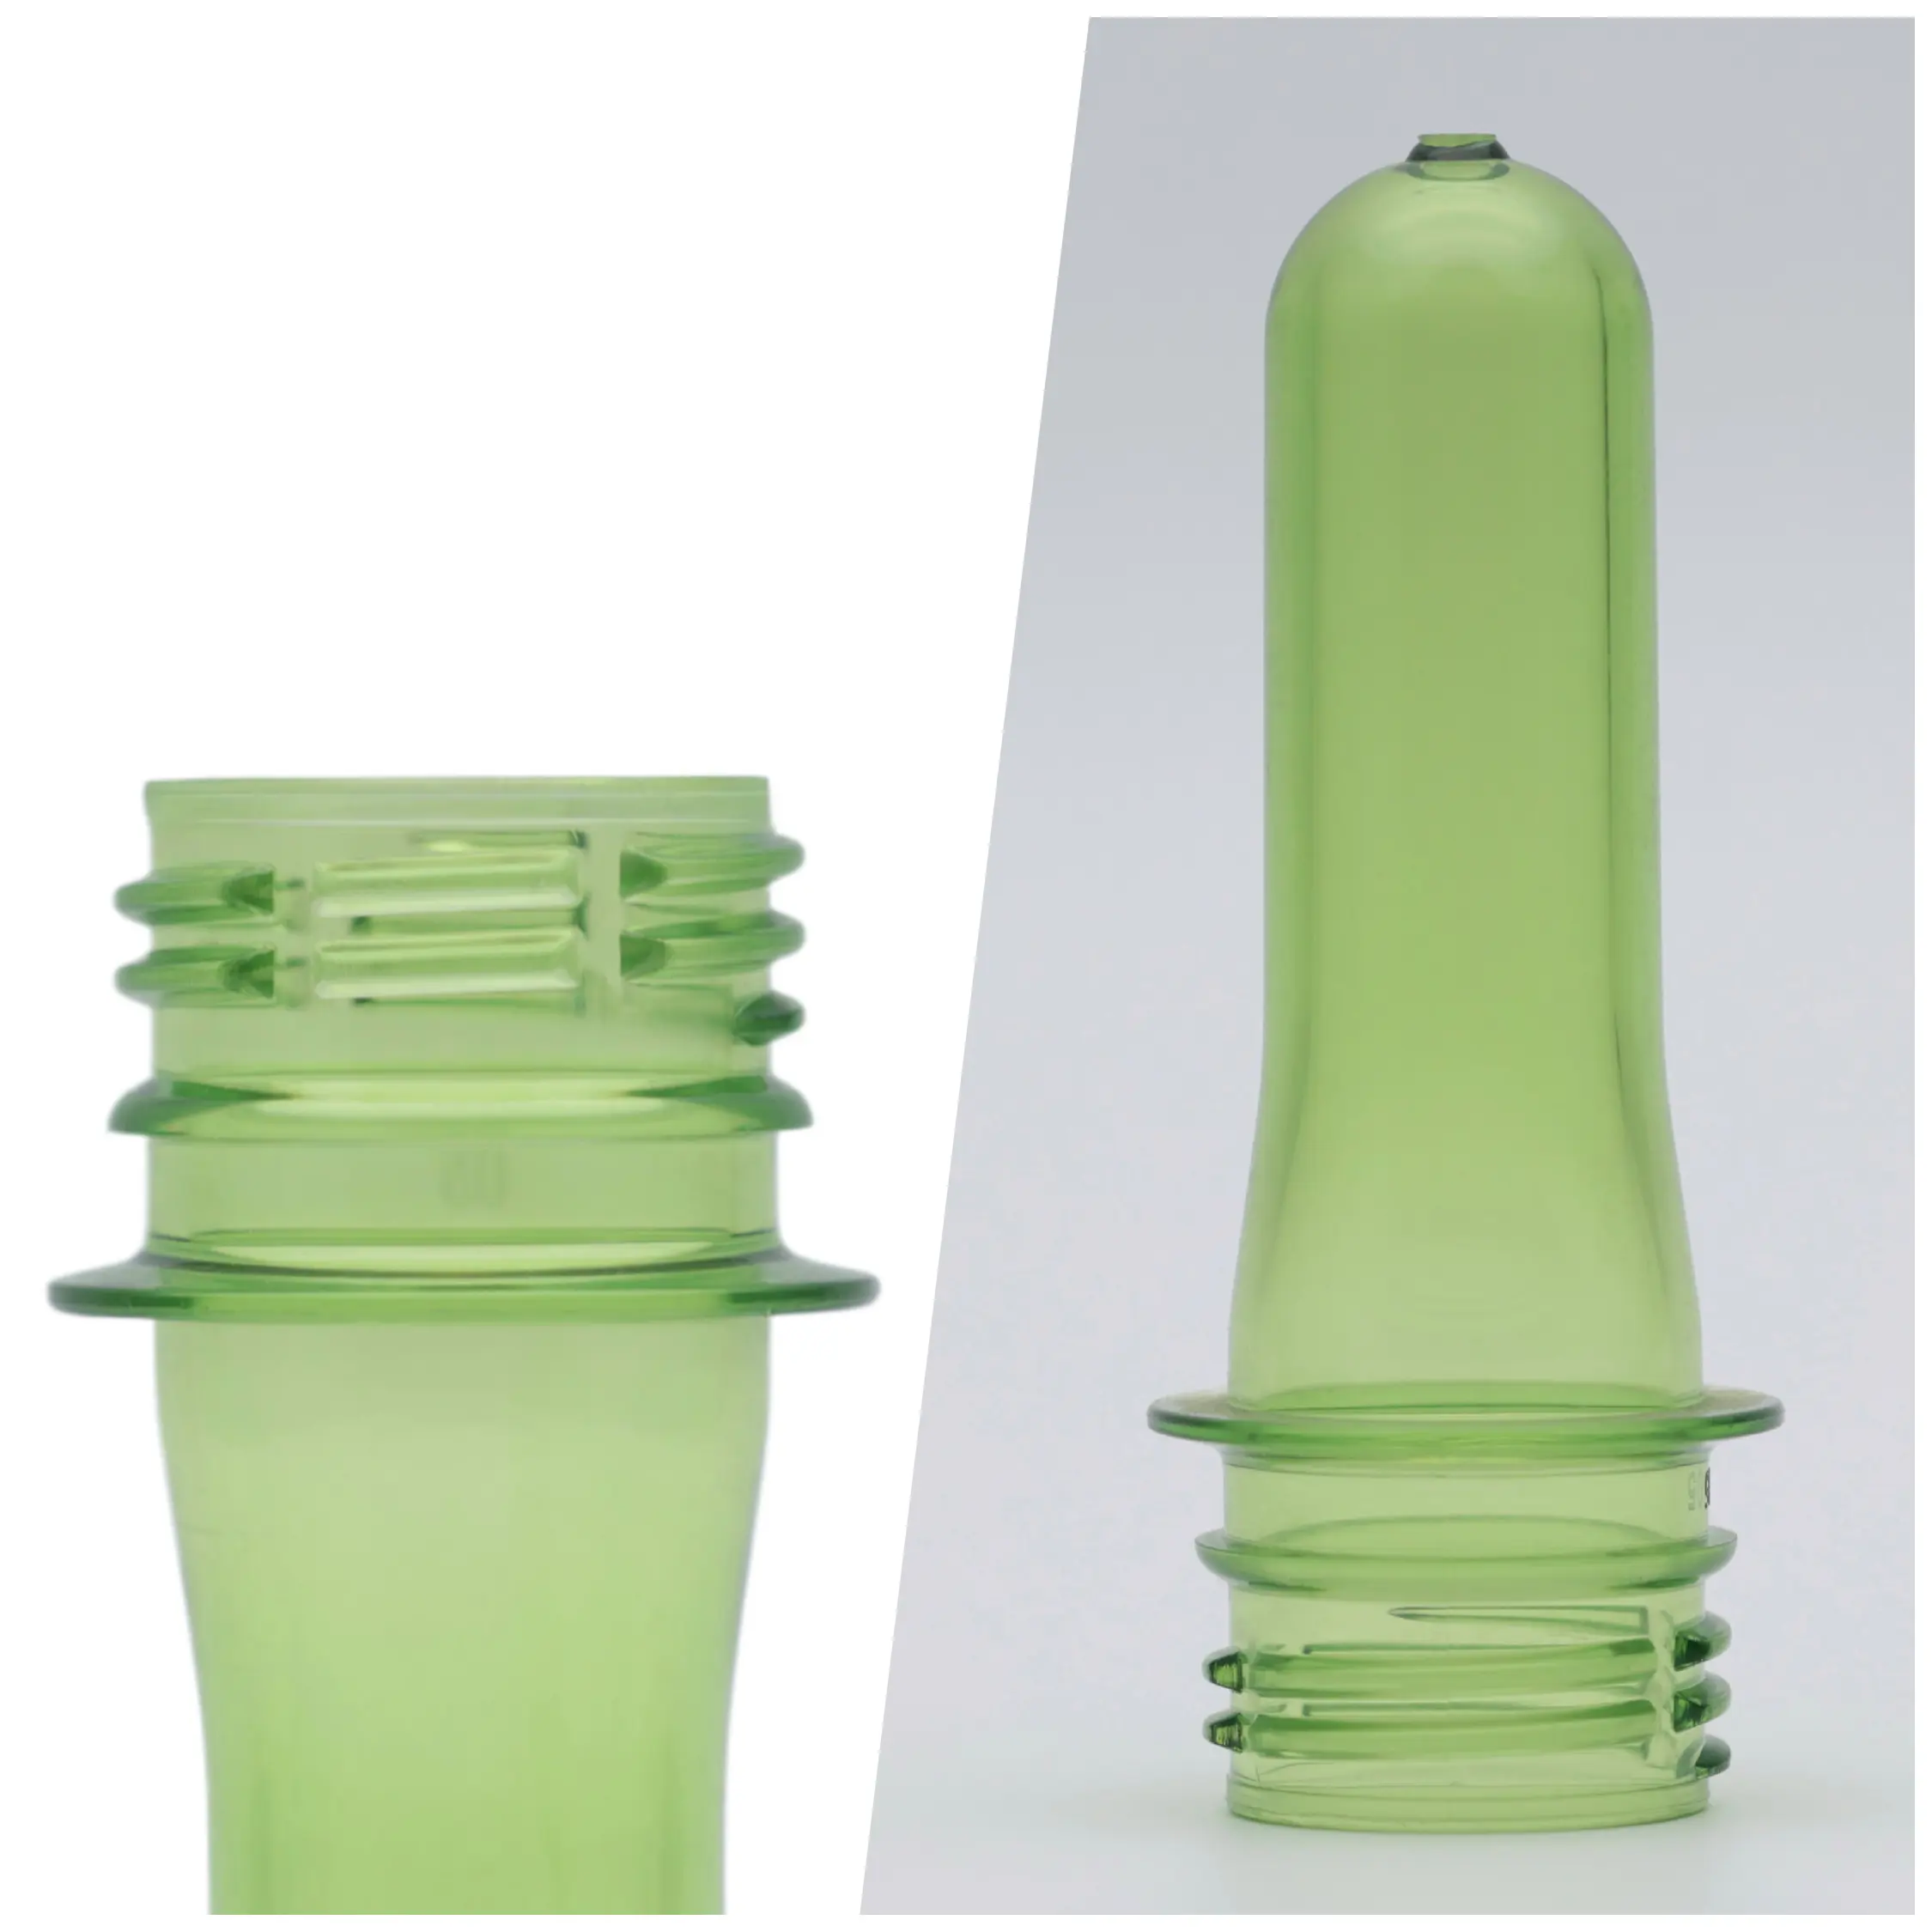 Pré-forma plástica de alta demanda para garrafas de água e suco, 28 mm PCO1810 de pescoço PET 11g - 70g, venda imperdível